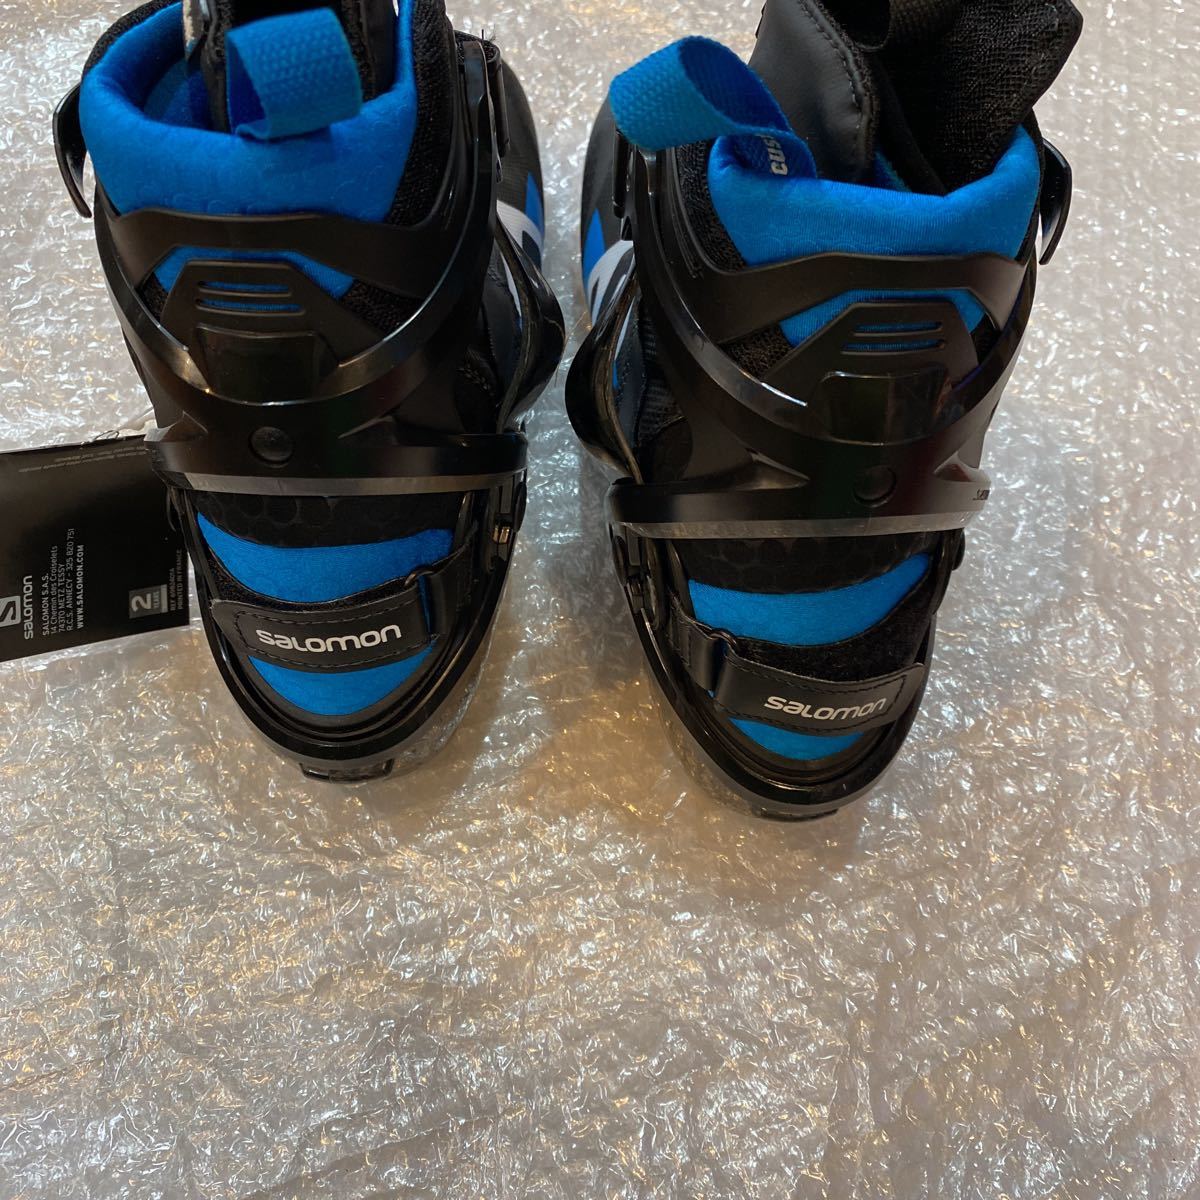  Salomon внедорожник ботинки 27.5 см S/RACE skate плюс Pro ссылка новый товар не использовался 